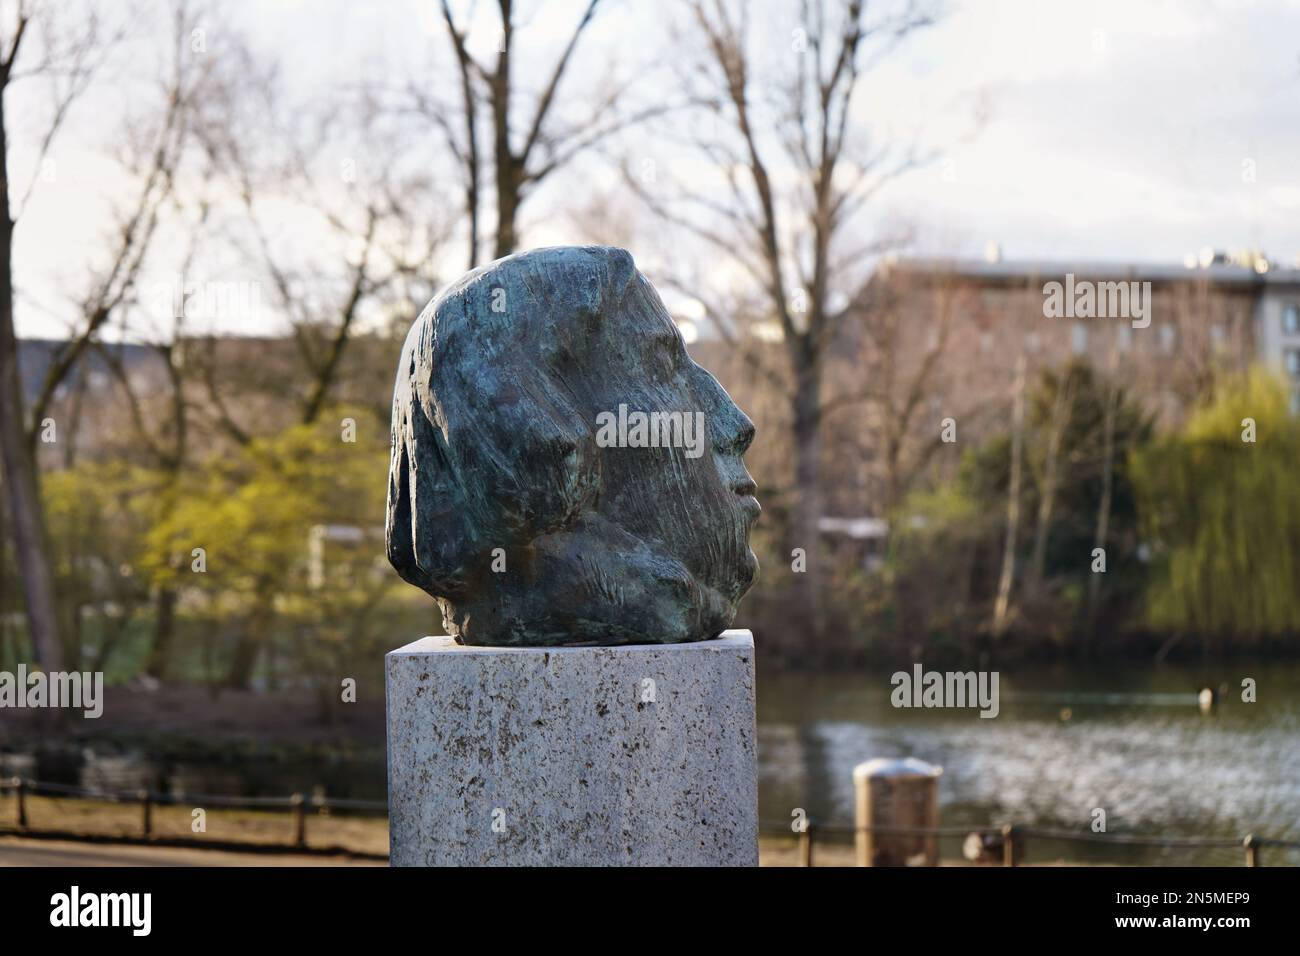 Buste en bronze du compositeur allemand Robert Schumann dans le parc public Hofgarten à Düsseldorf/Allemagne, dévoilé 1956. Sculpteur: Karl Hartung. Banque D'Images